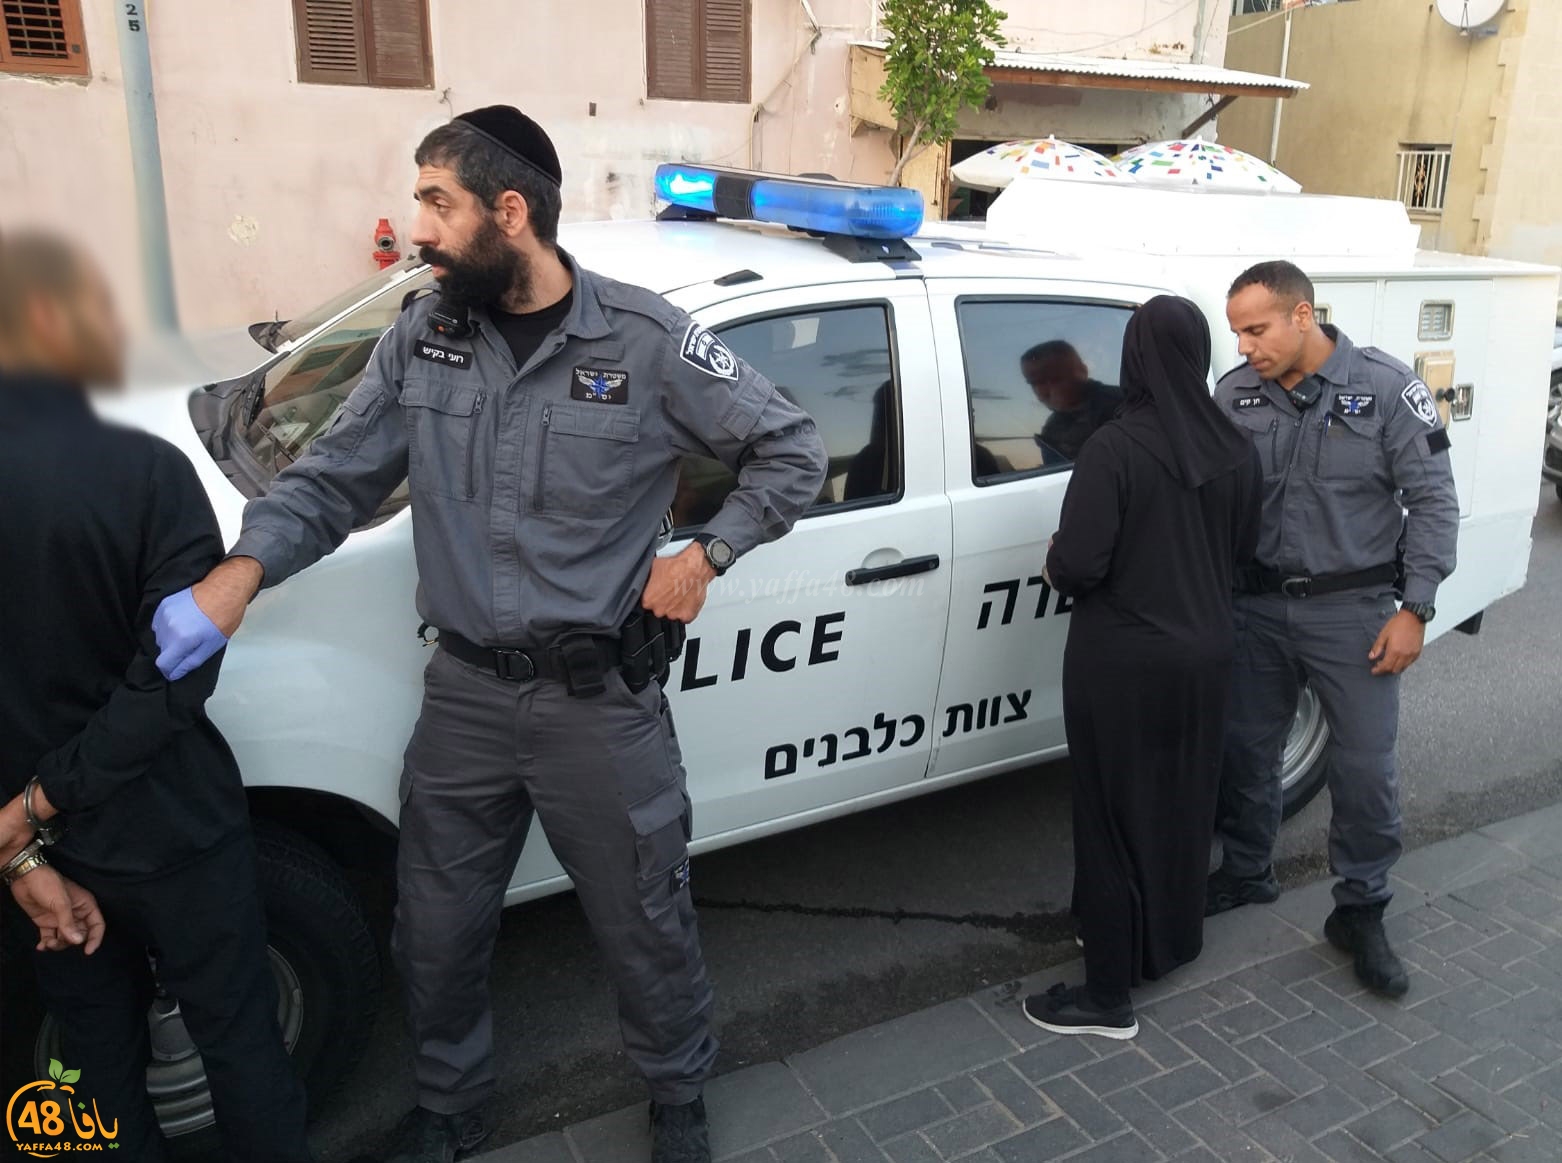  بالفيديو: الشرطة تعتقل 3 قاصرين في مدينة يافا دون إيضاح الأسباب